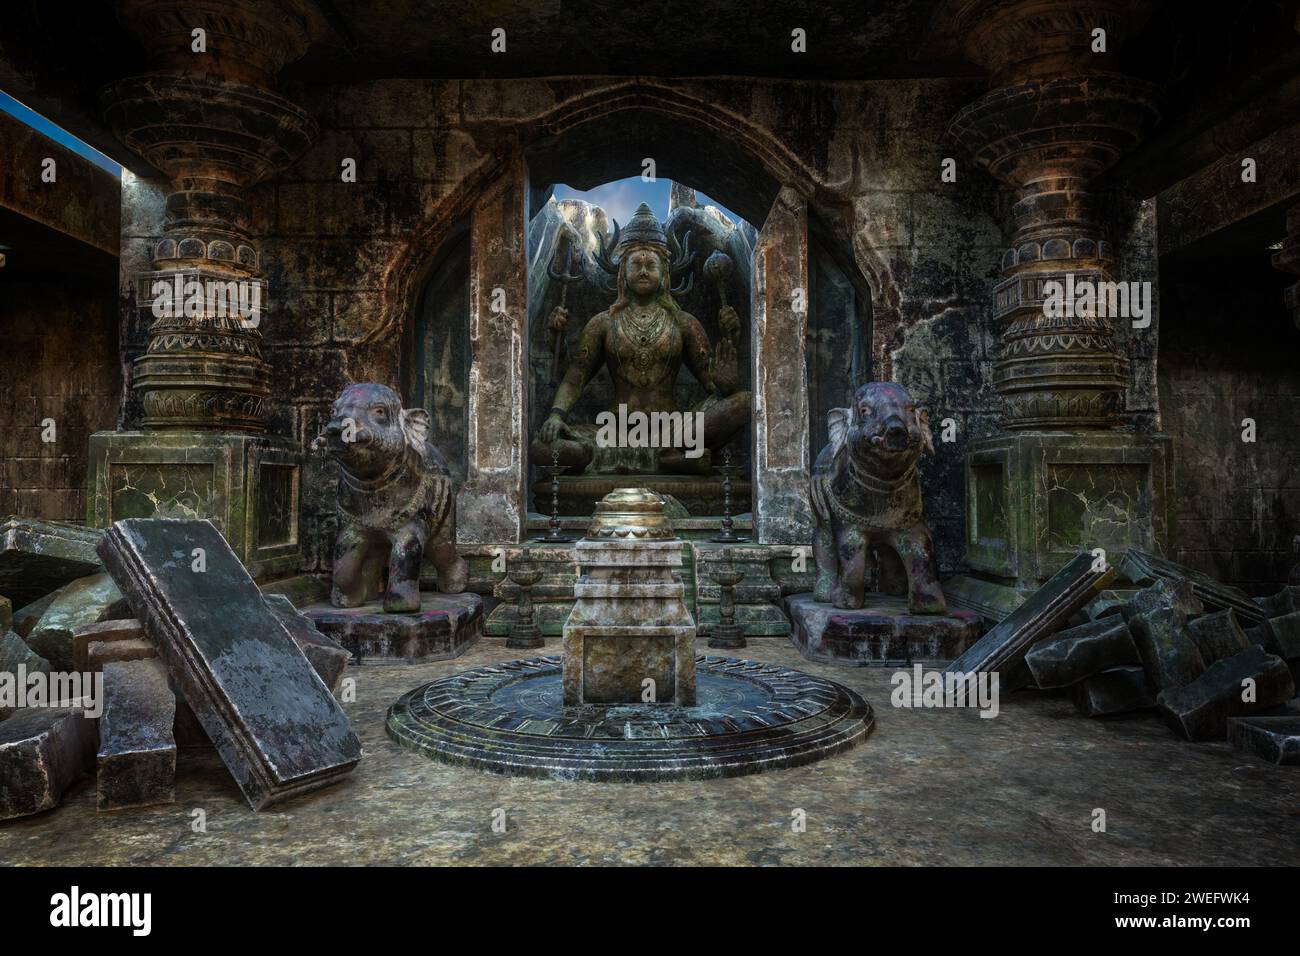 Rovine di un tempio indiano con statue di un dio e due elefanti. Illustrazione 3D. Foto Stock